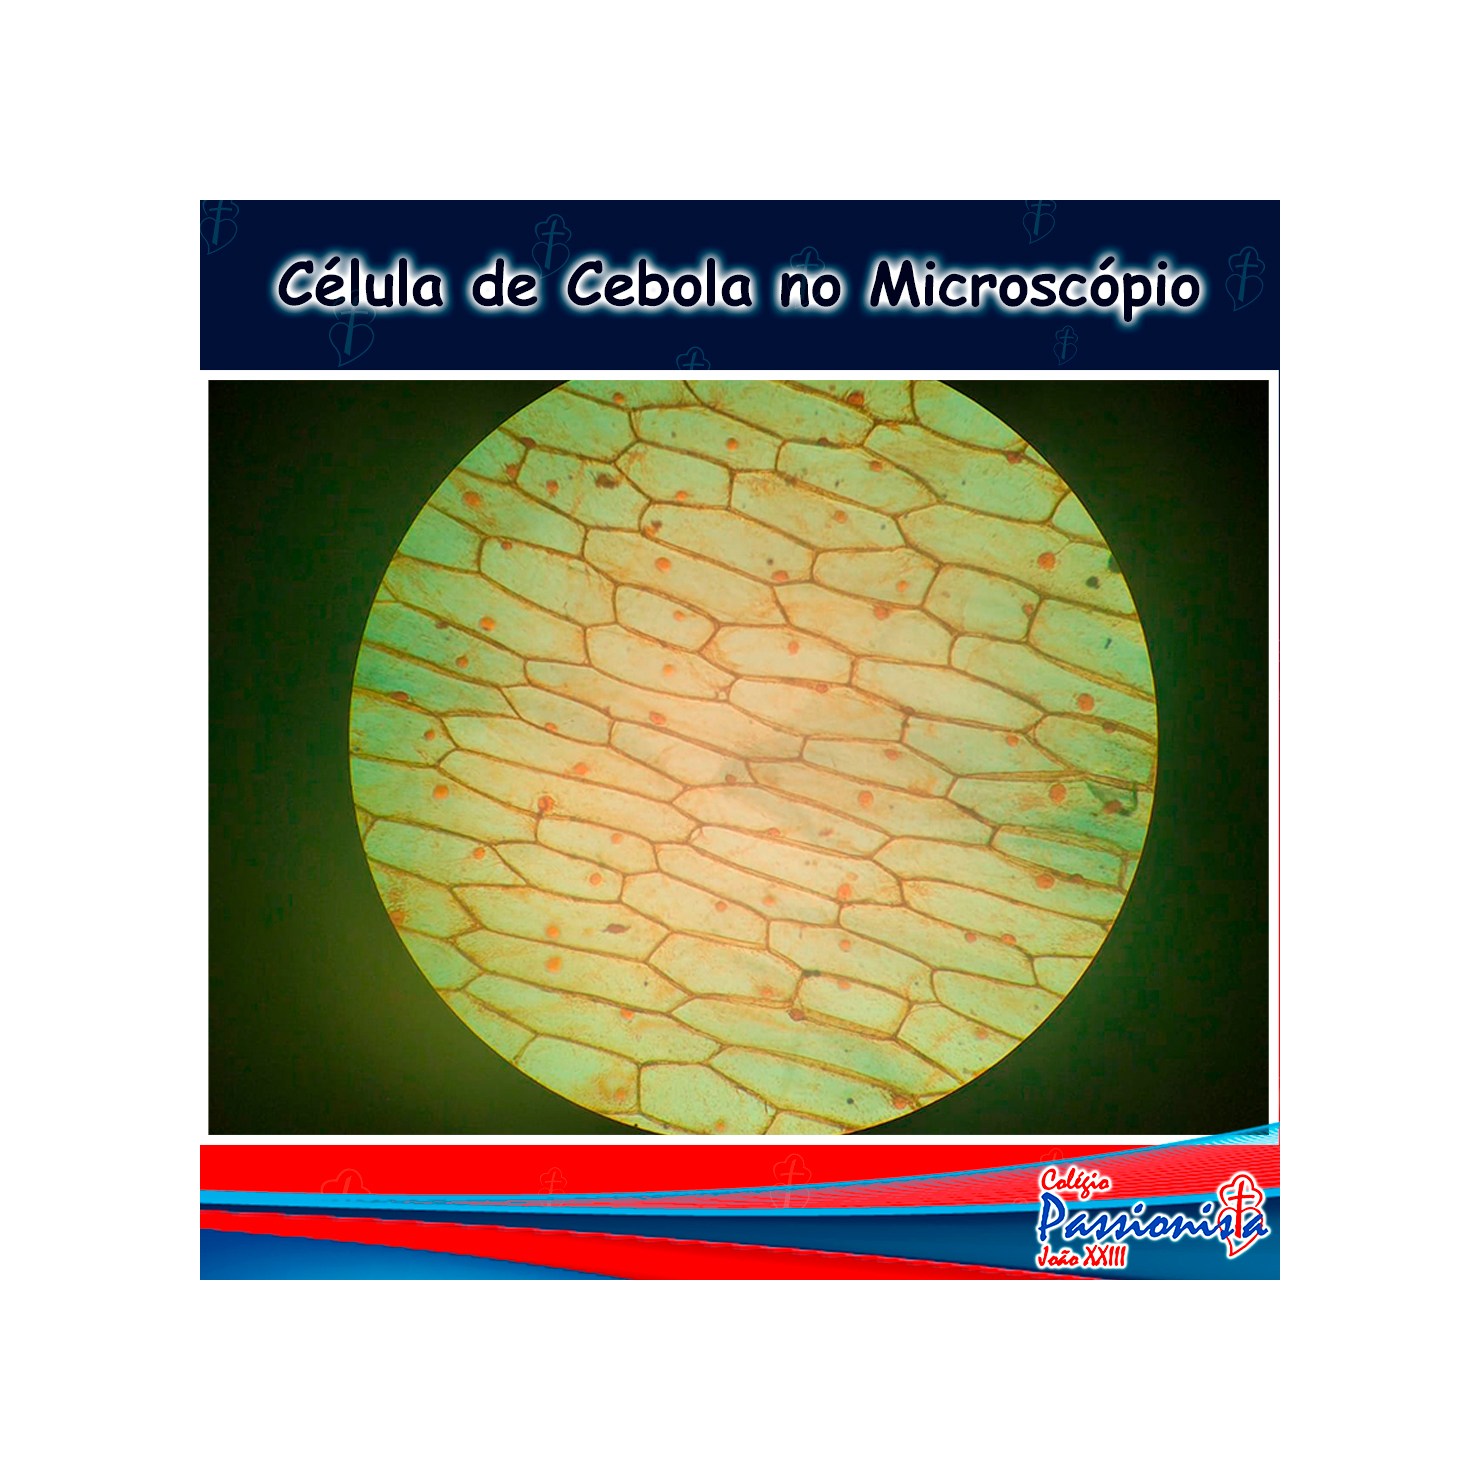 Clulas da cebola no microscpio Colgio Passionista Joo XXIII